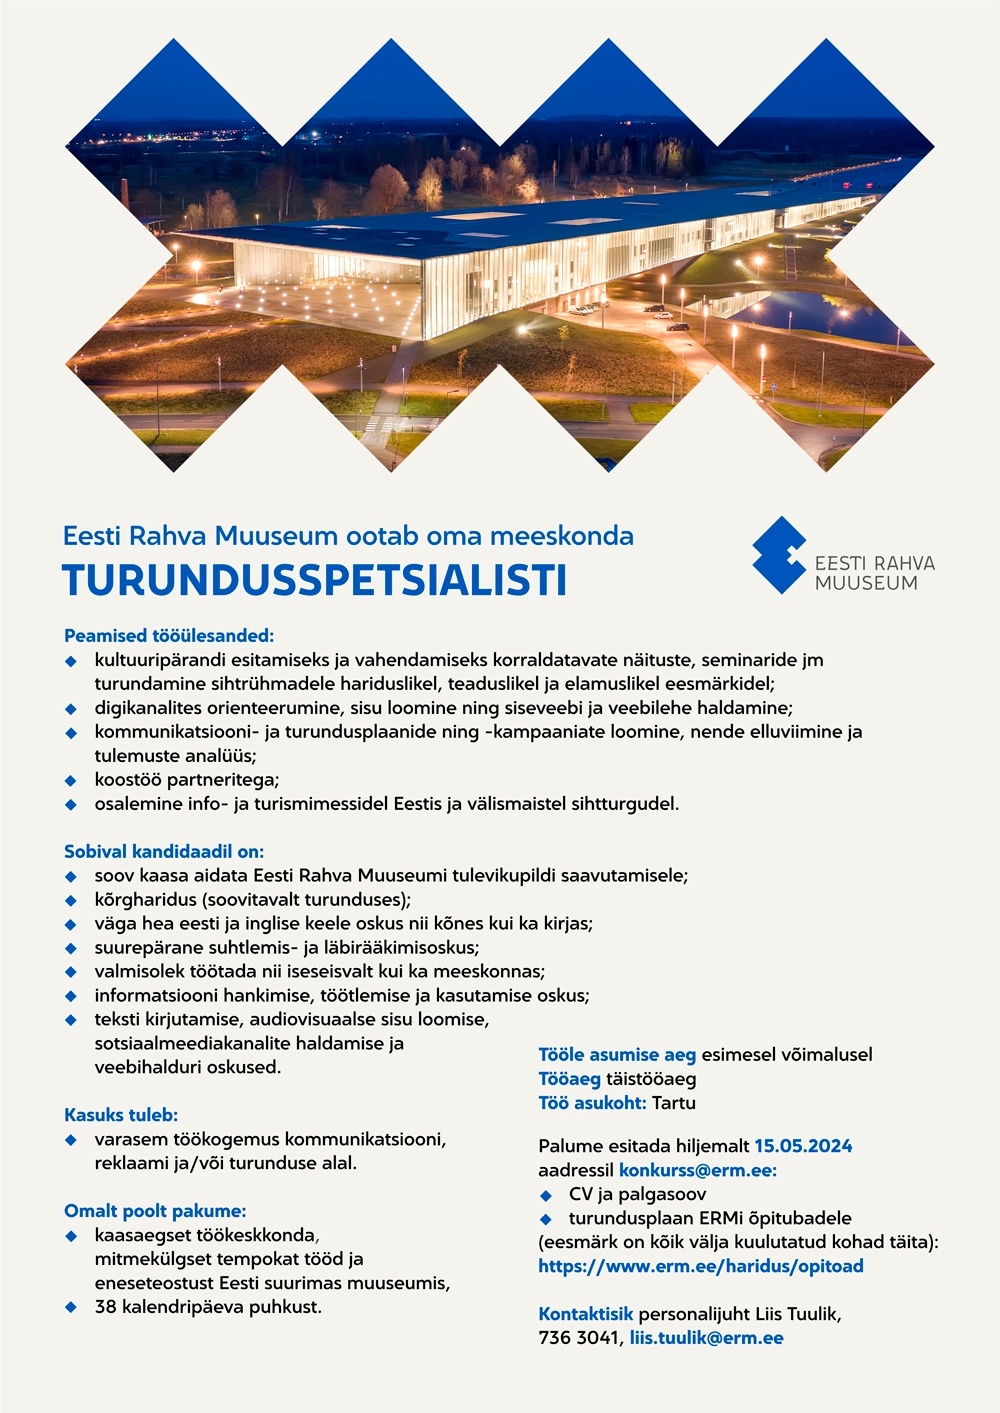 Eesti Rahva Muuseum Turundusspetsialist